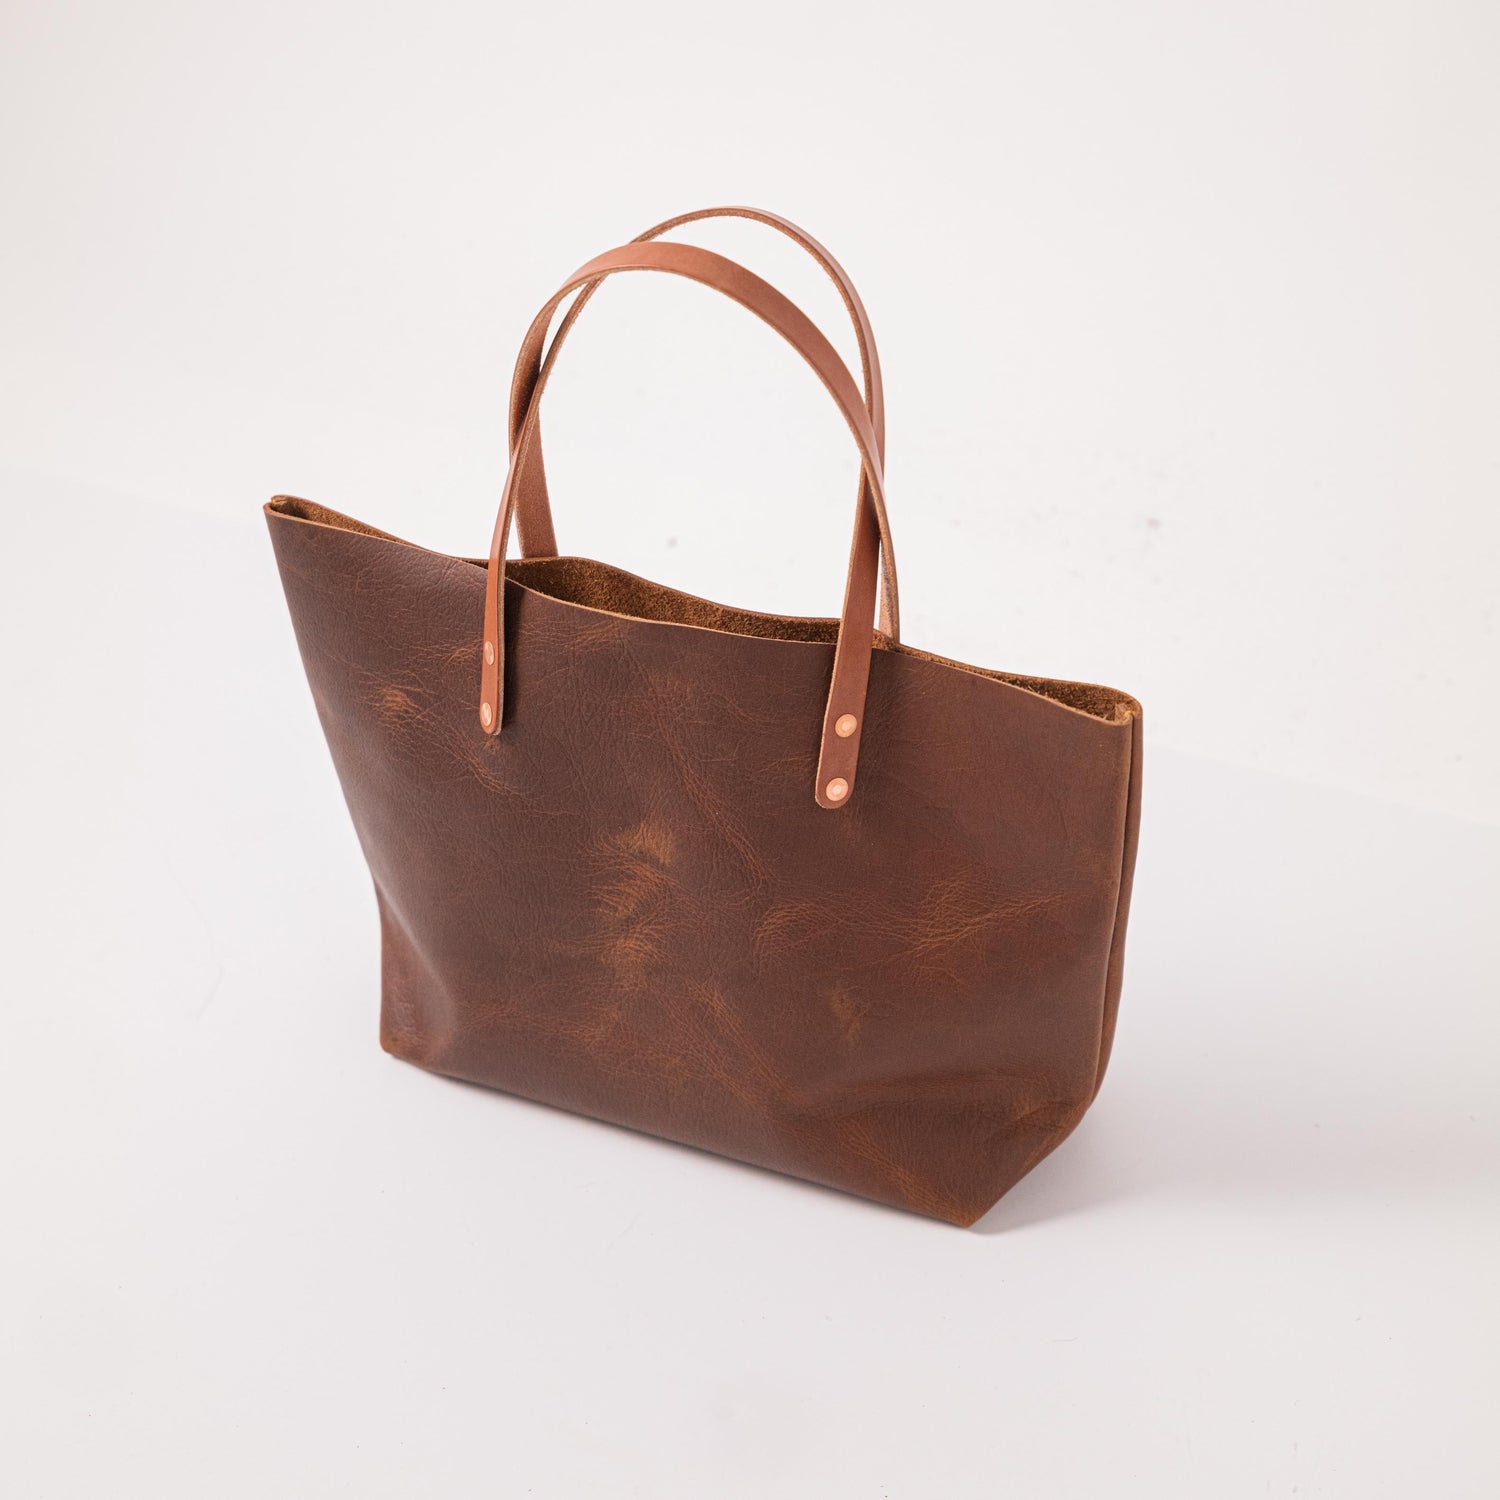 Original Tan Kodiak East West Tote- tan leather bag handmade in America